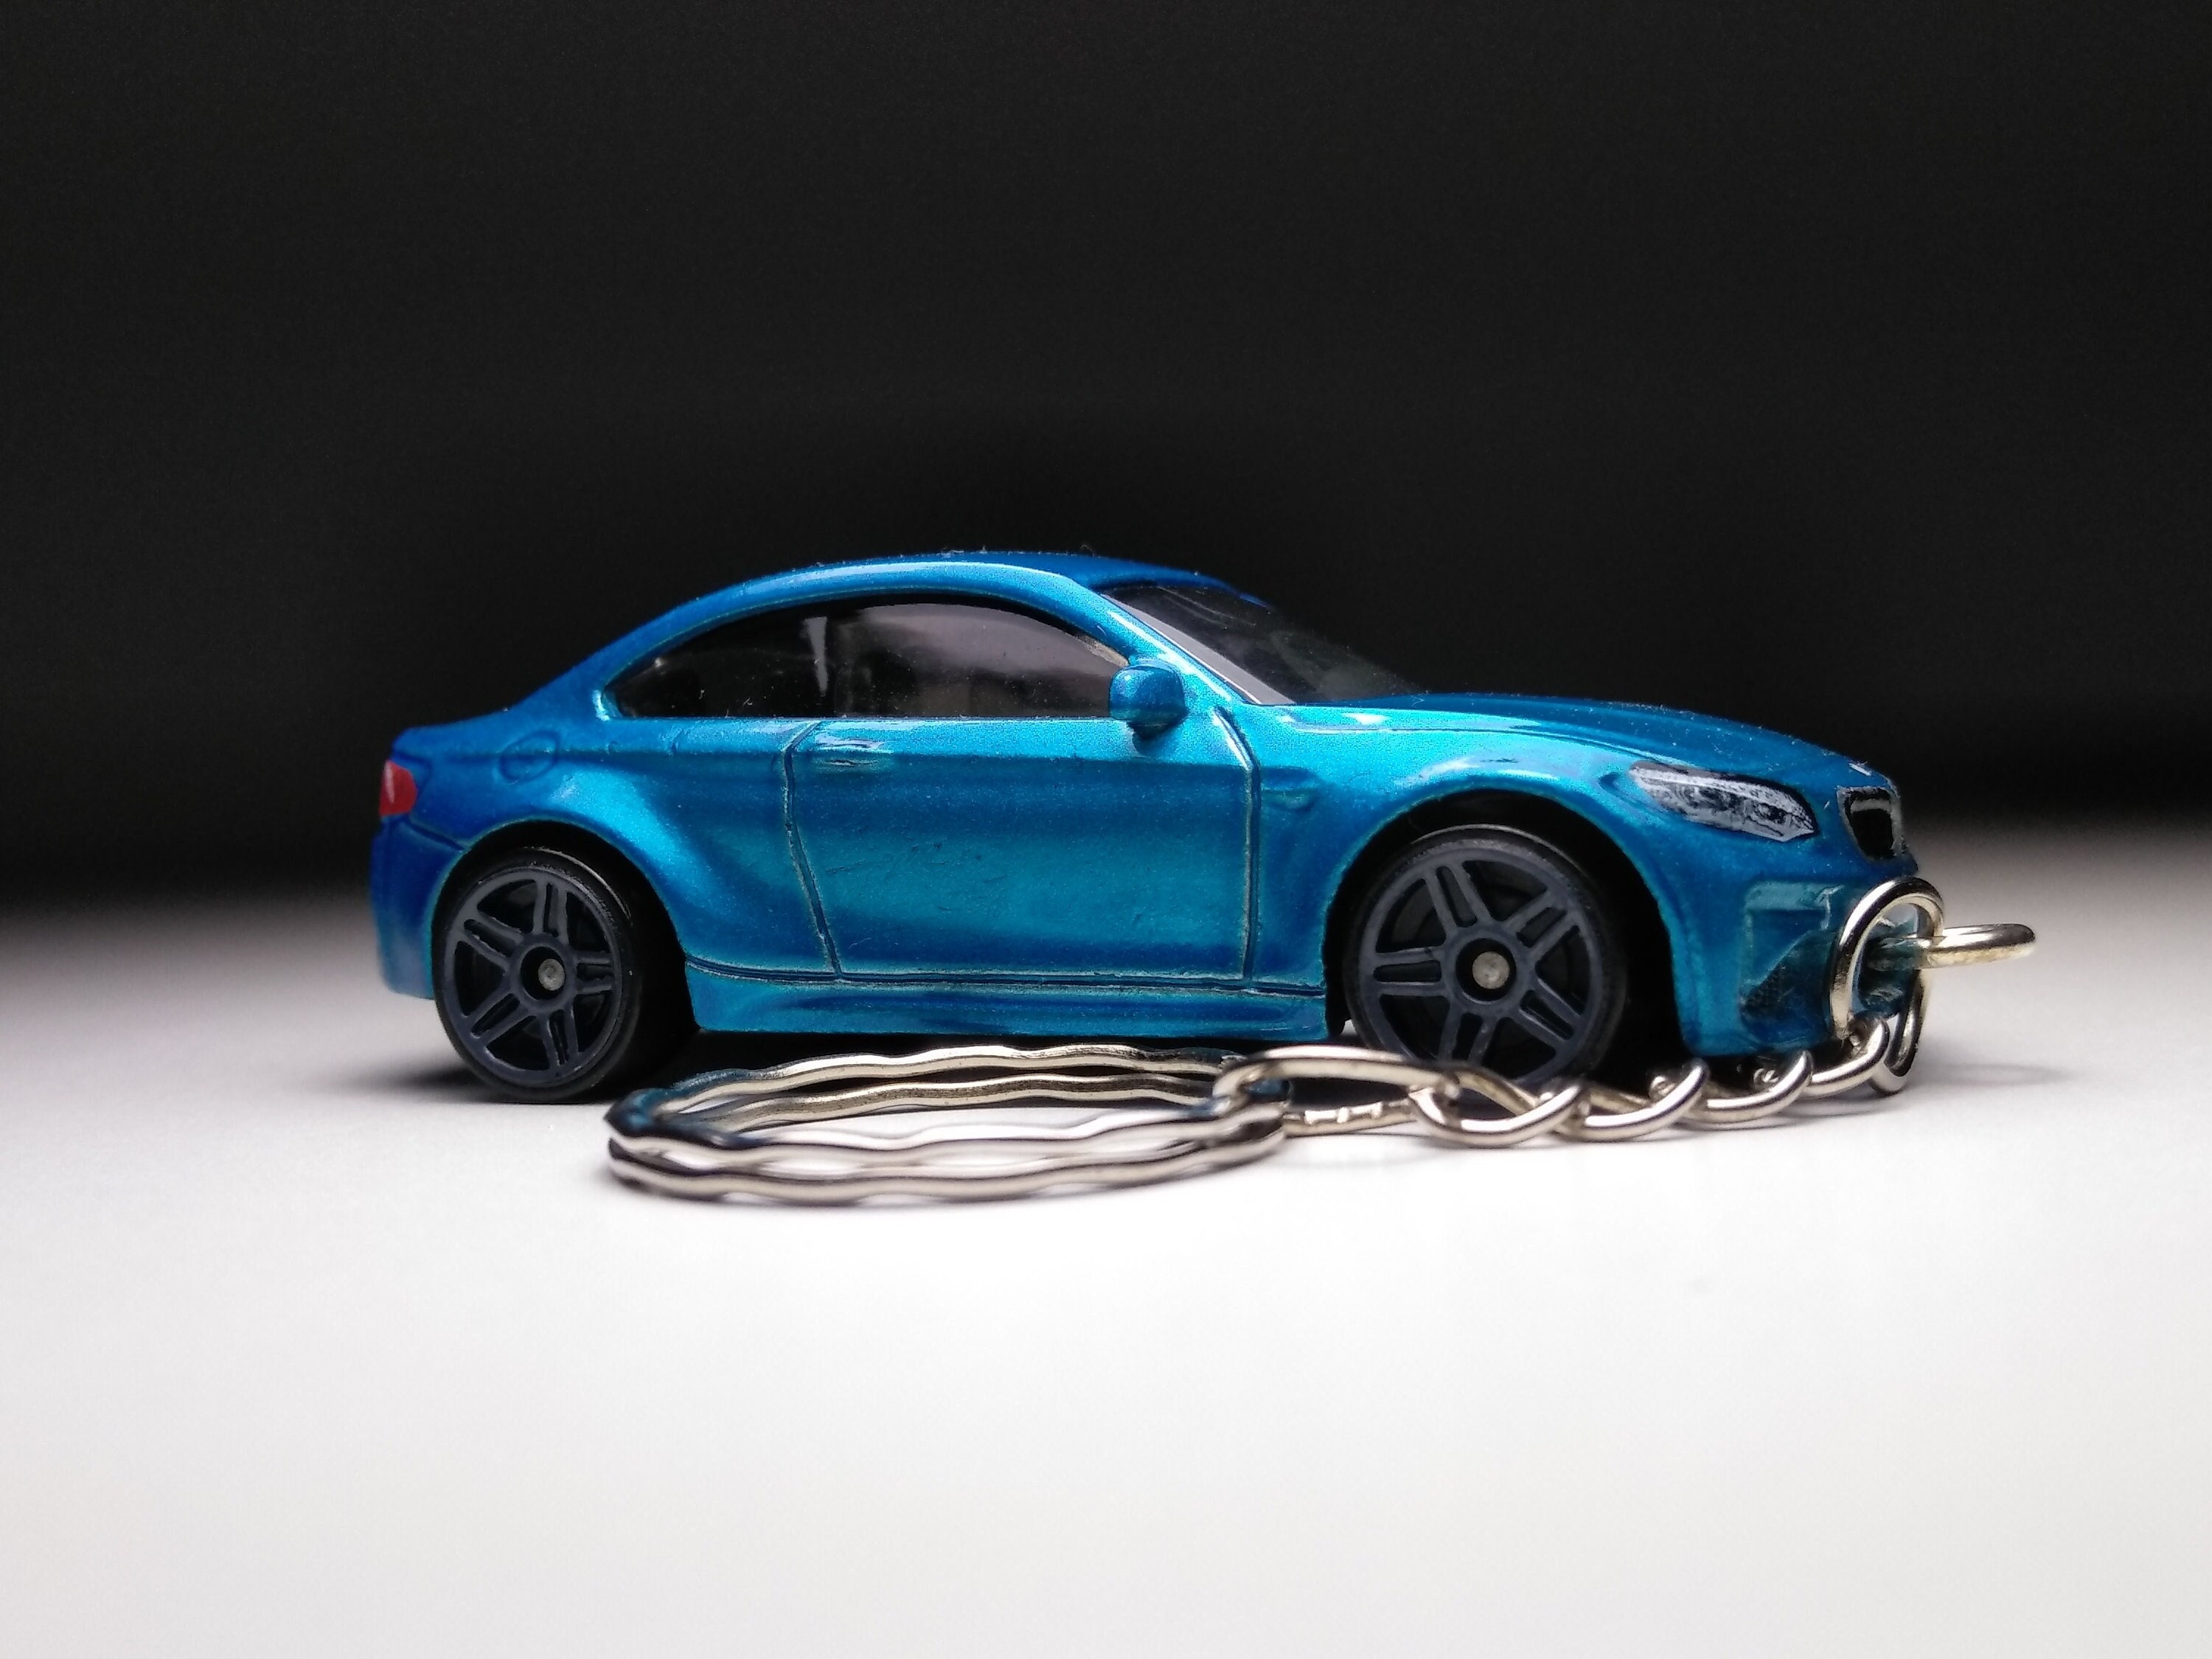 Schlüsselanhänger für BMW F12 Coupe günstig bestellen